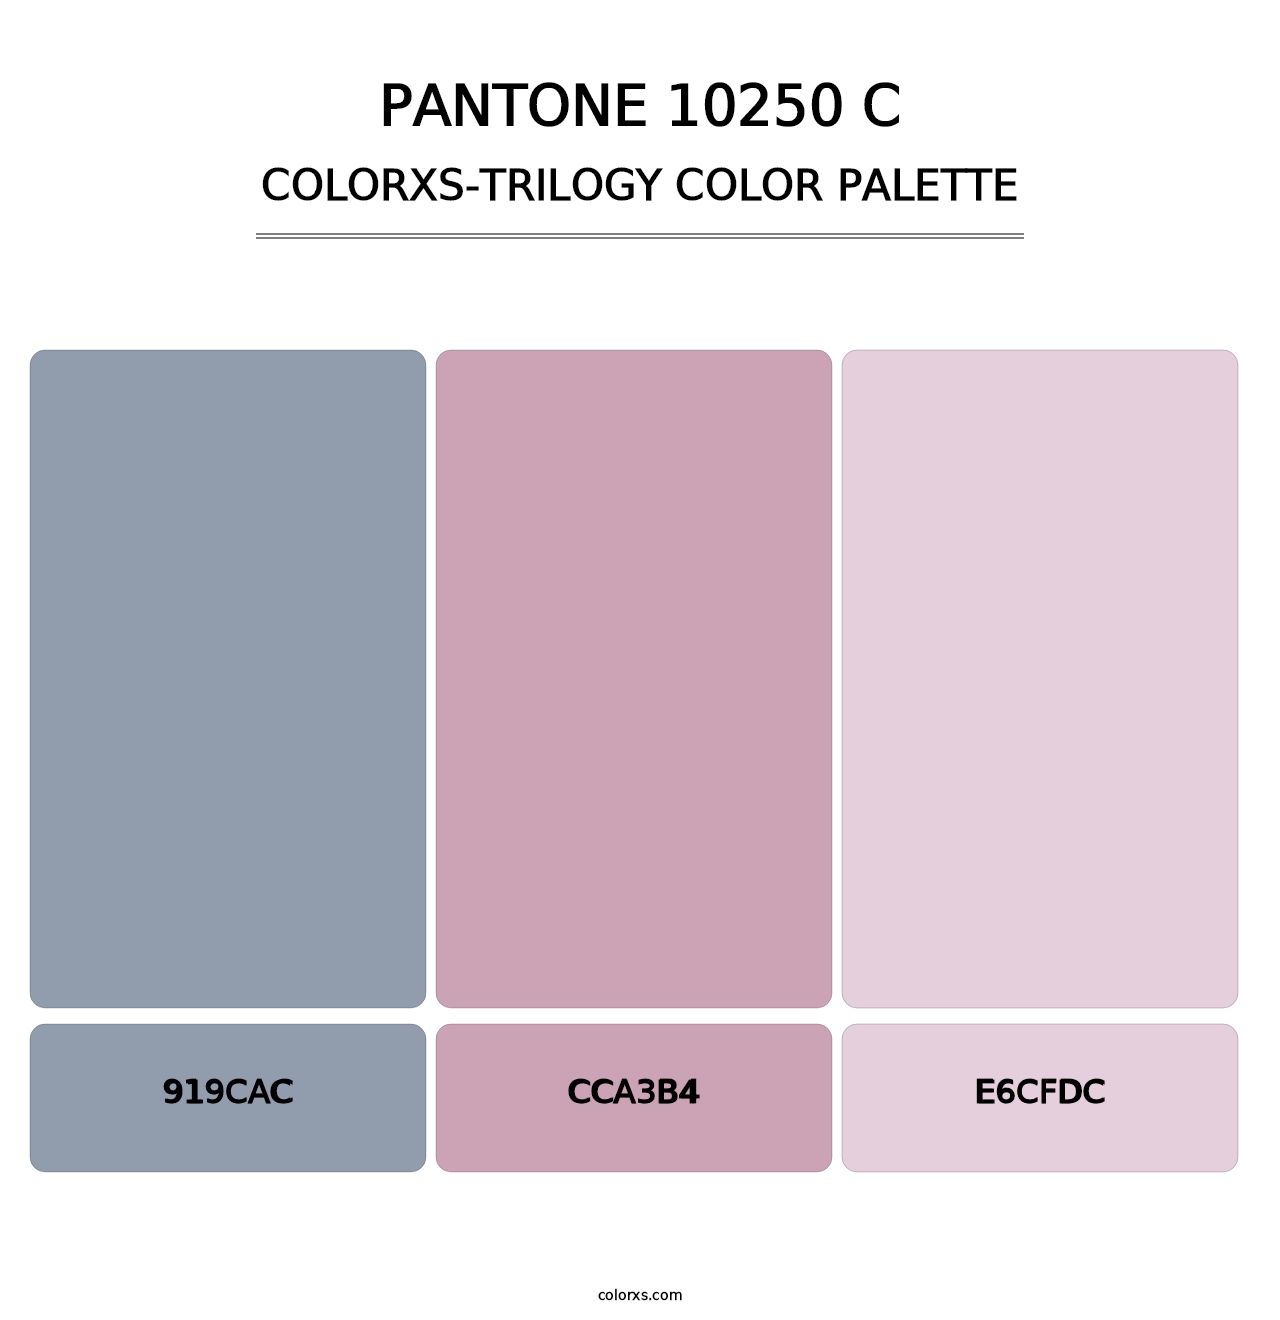 PANTONE 10250 C - Colorxs Trilogy Palette